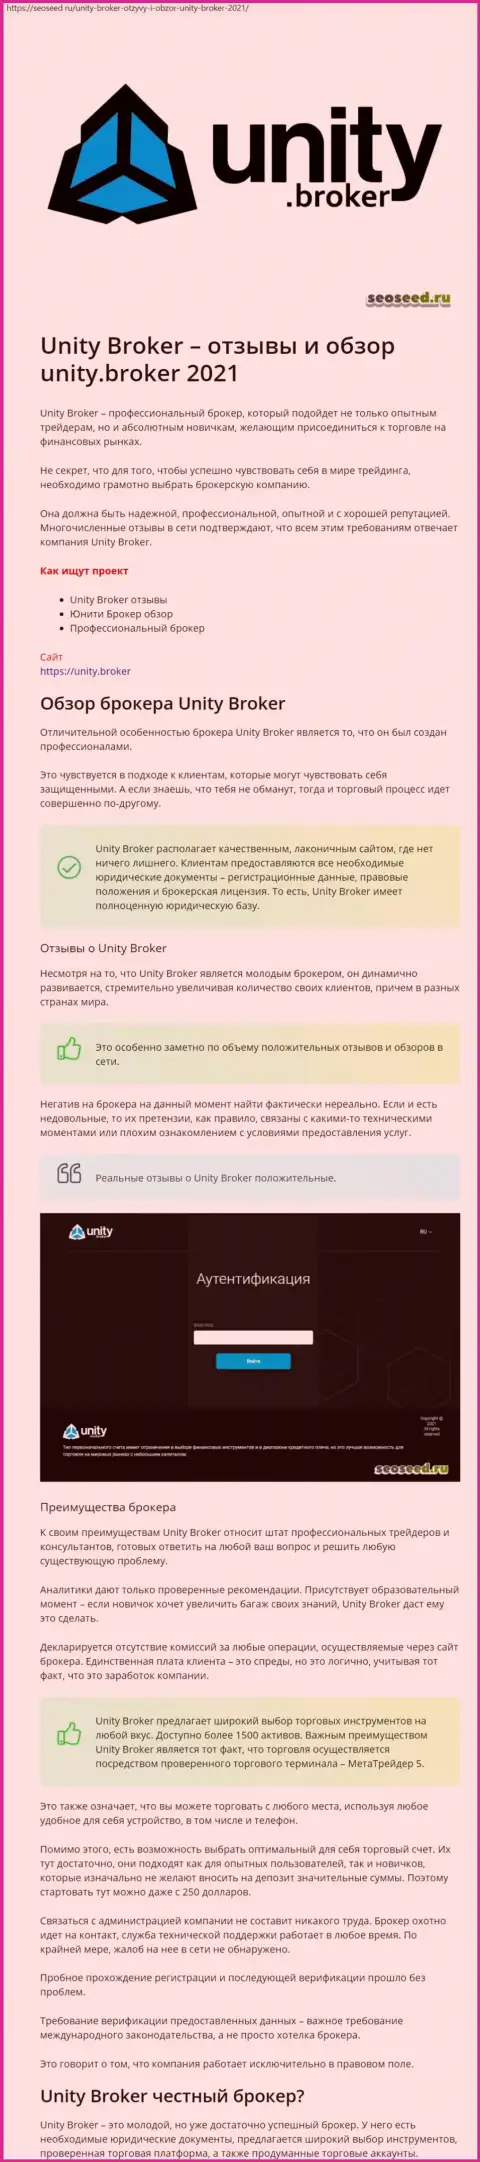 Информация о Форекс дилинговом центре Unity Broker на веб-сайте seoseed ru